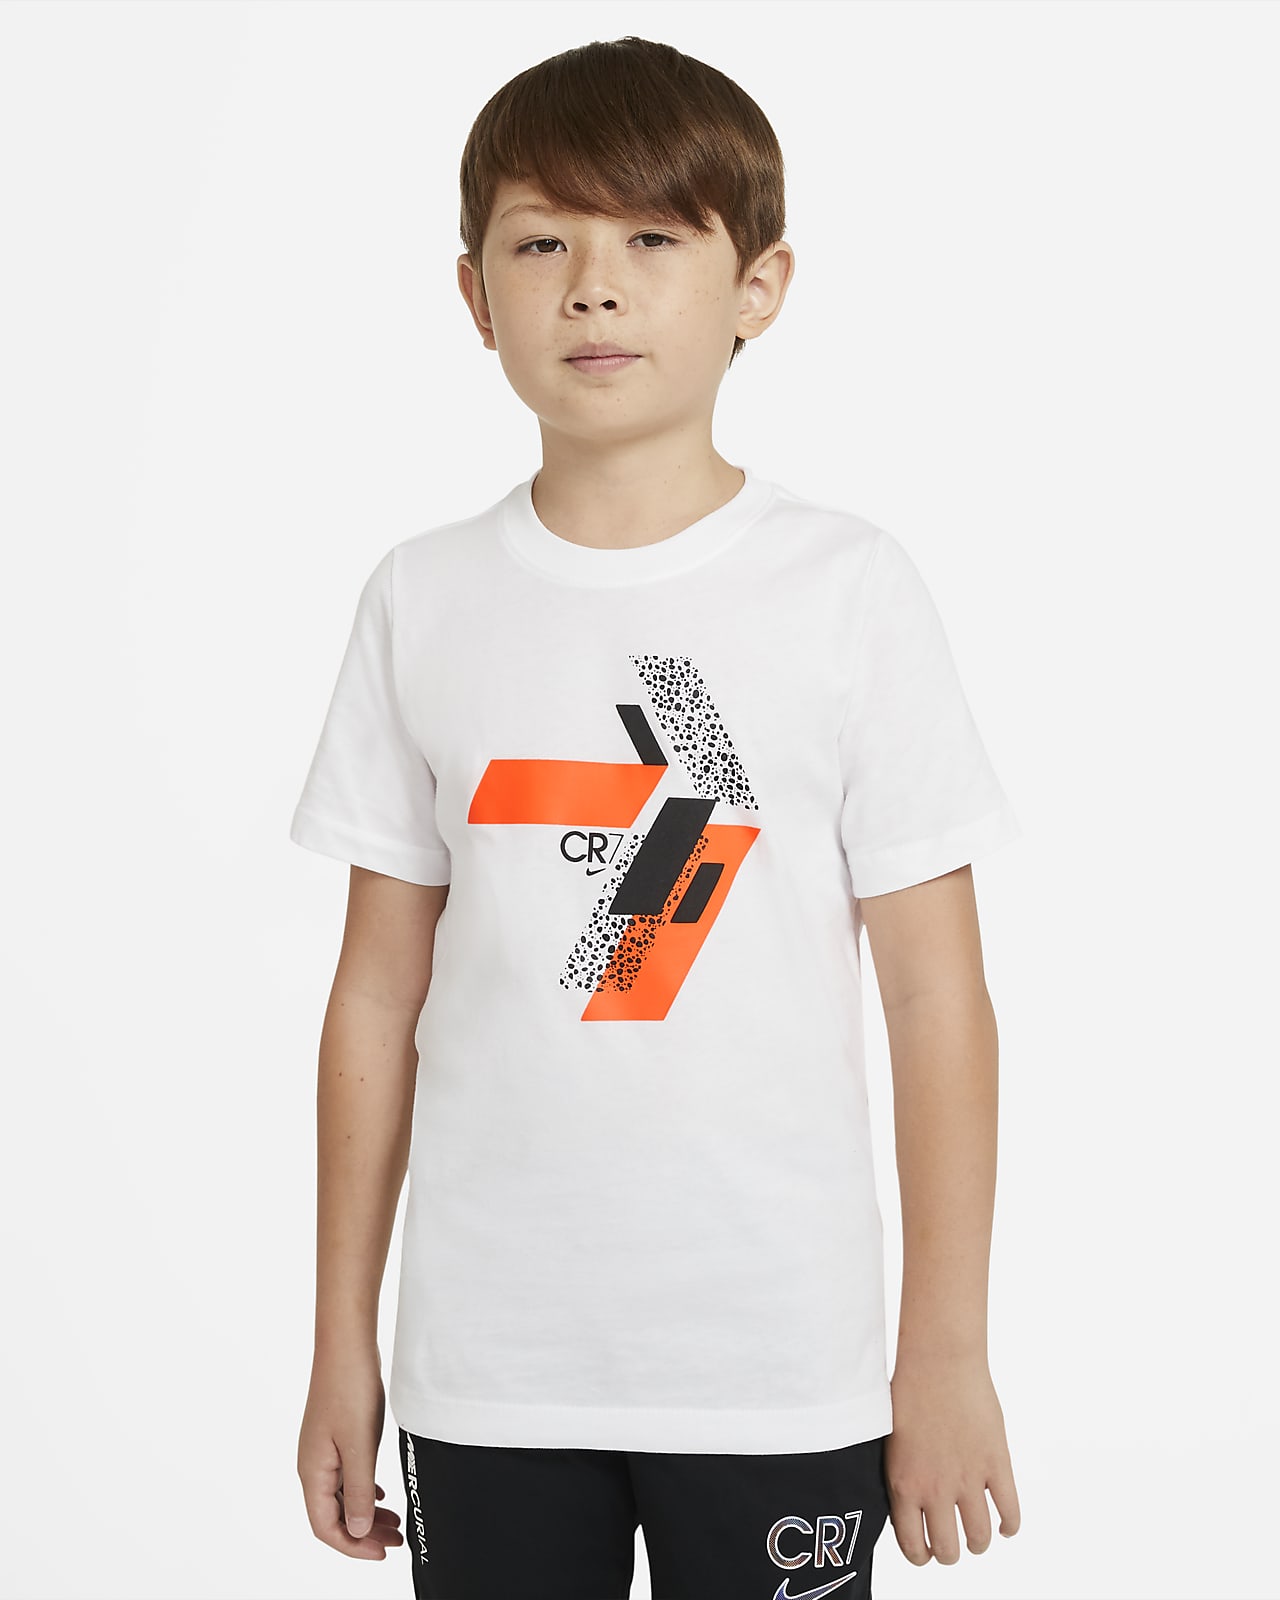 CR7 ジュニア サッカー Tシャツ